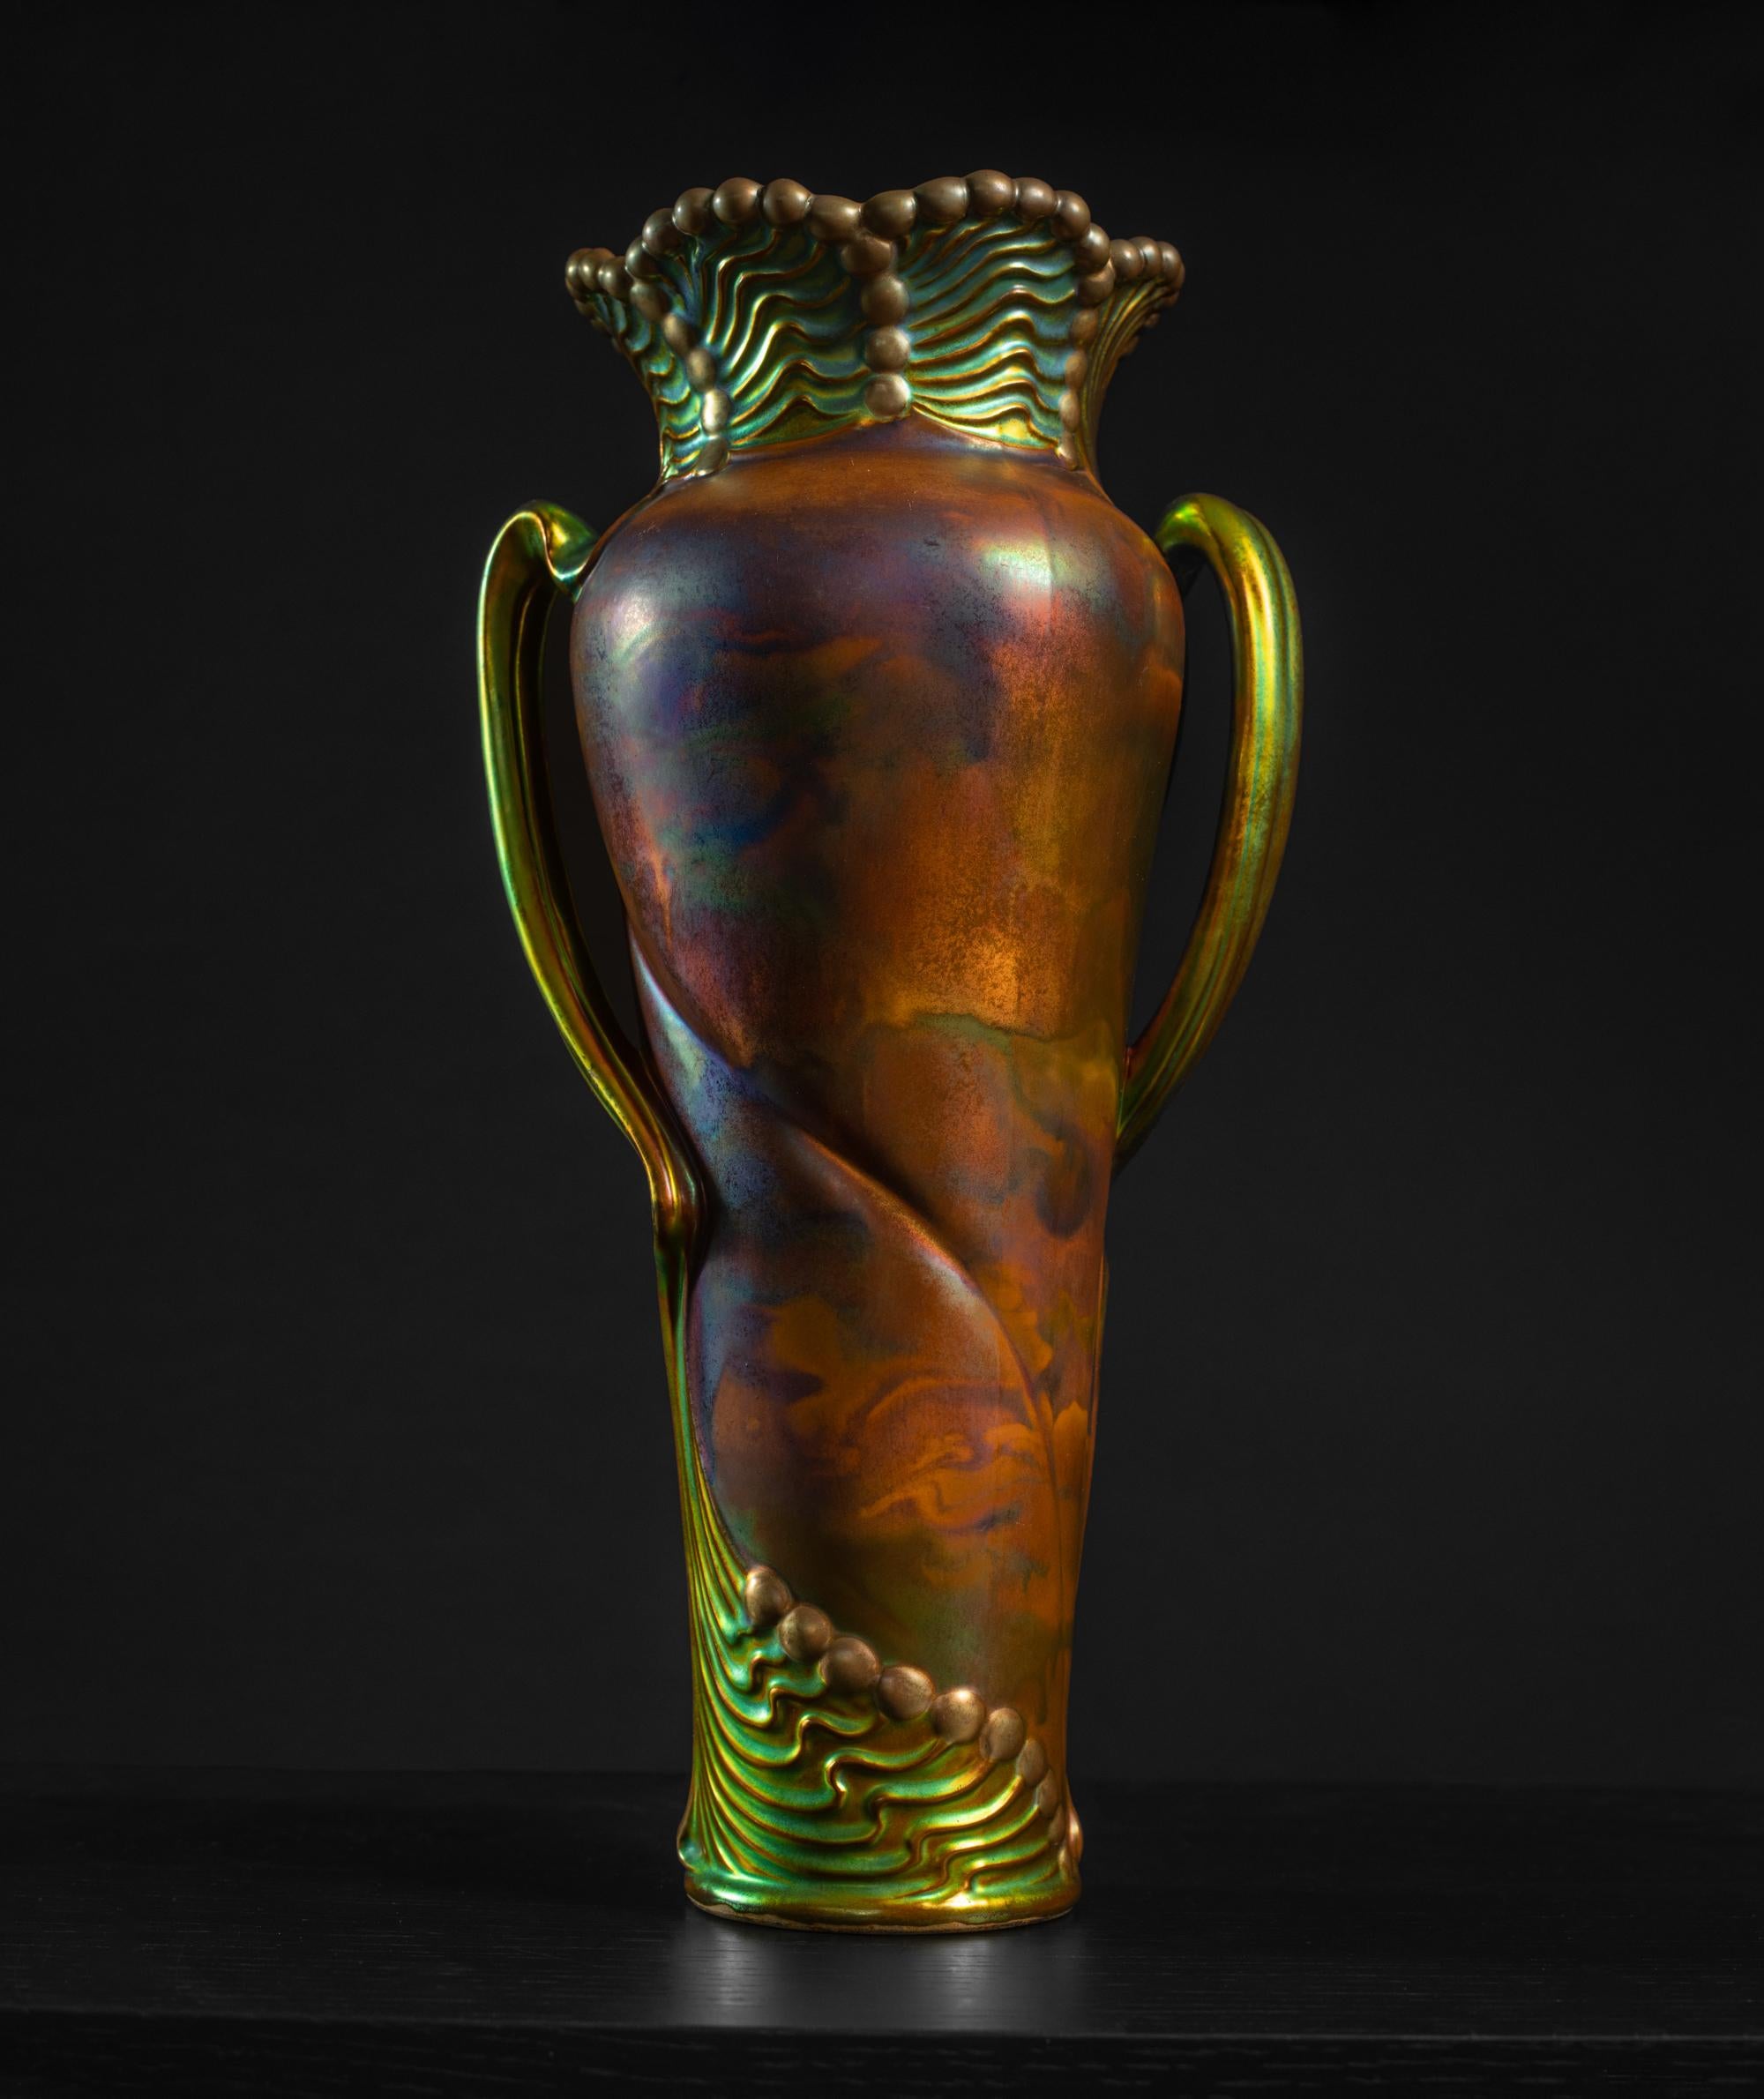 Zsolnay führte 1893 seine patentierte metallisch glänzende Glasur ein, die als Eosin bezeichnet wurde. Die kleine Familienkeramikwerkstatt, die Miklos Zsolnay 1853 in Pecs, Ungarn, gegründet hatte, hatte sich zu dieser Zeit zu einer Keramikfabrik